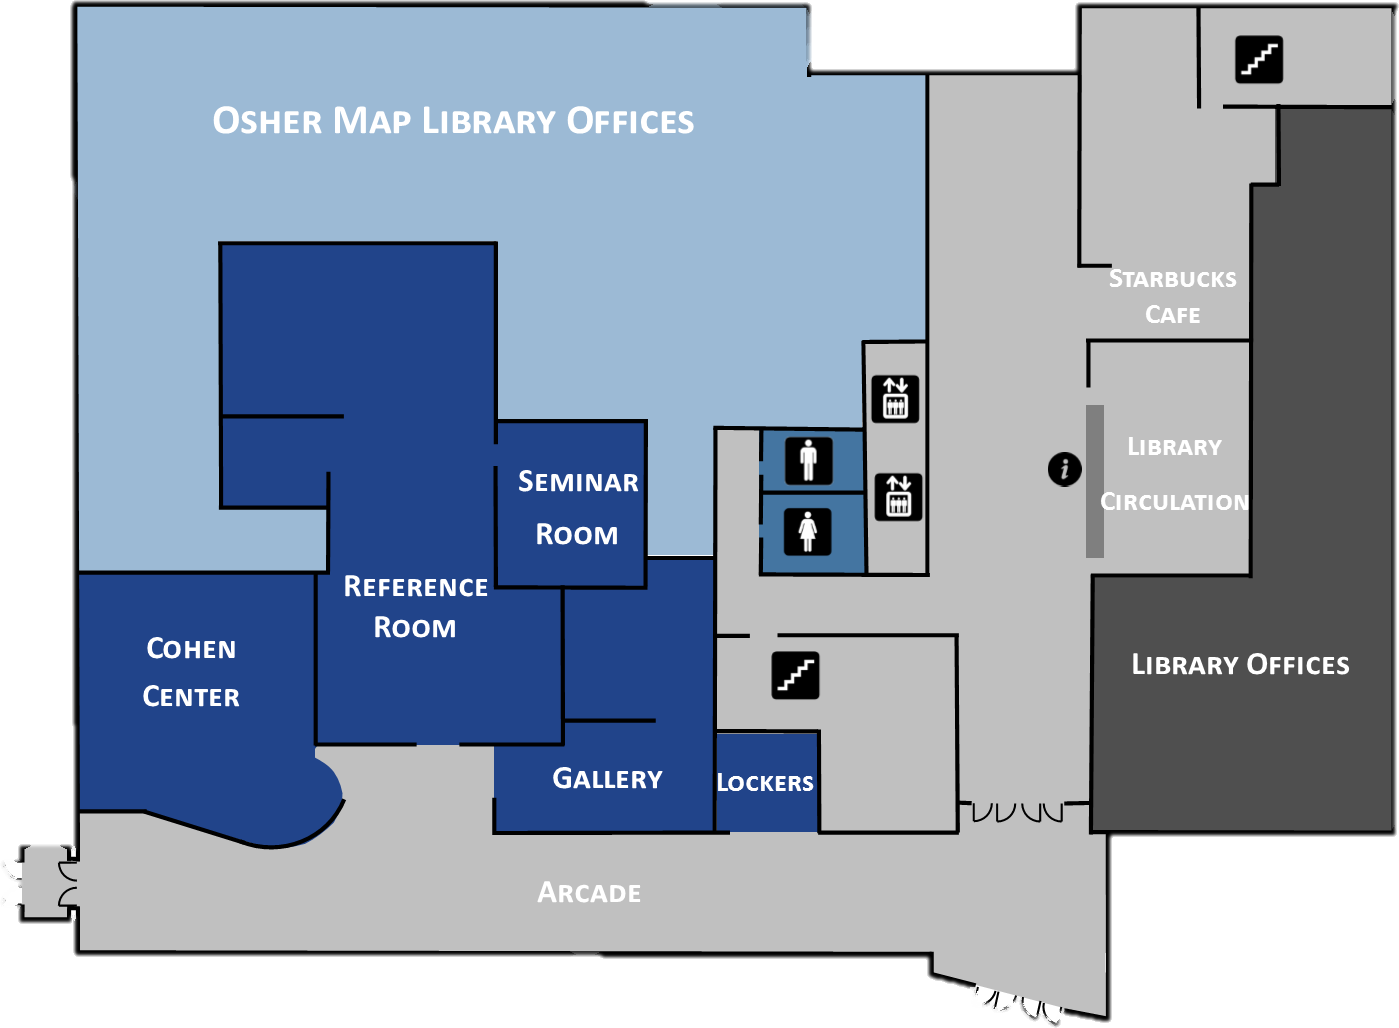 Карта библиотеки. Карта библиотеки в Doors. Карта библиотеки дурс. Library location карта. Maps library